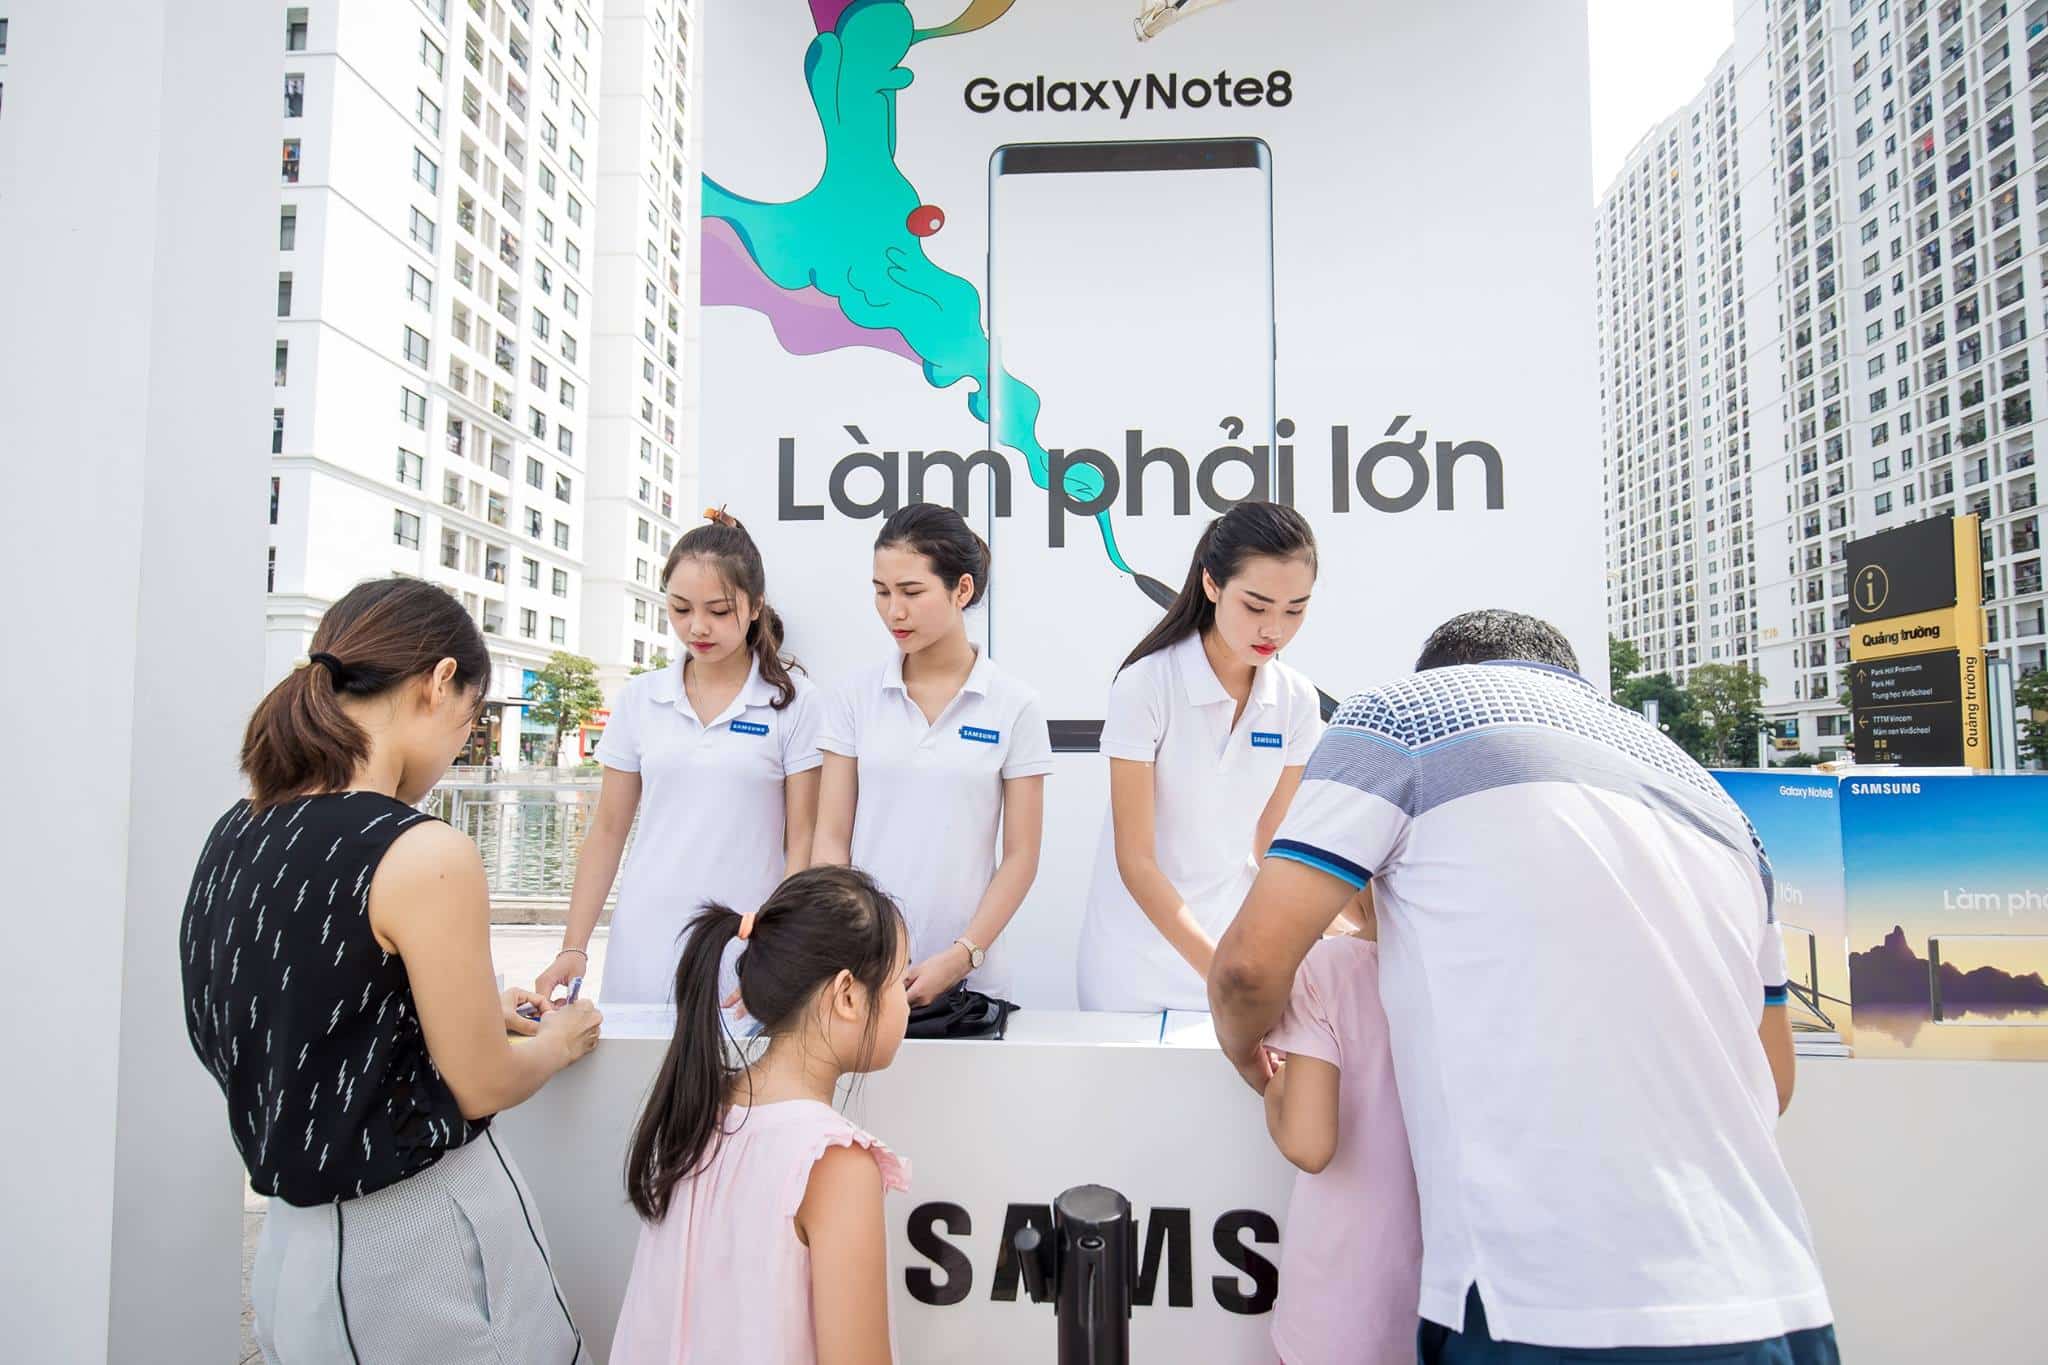 Tổ chức sự kiện bán hàng công ty Sam Sung, PG bán hàng tại quầy SamsungNote8